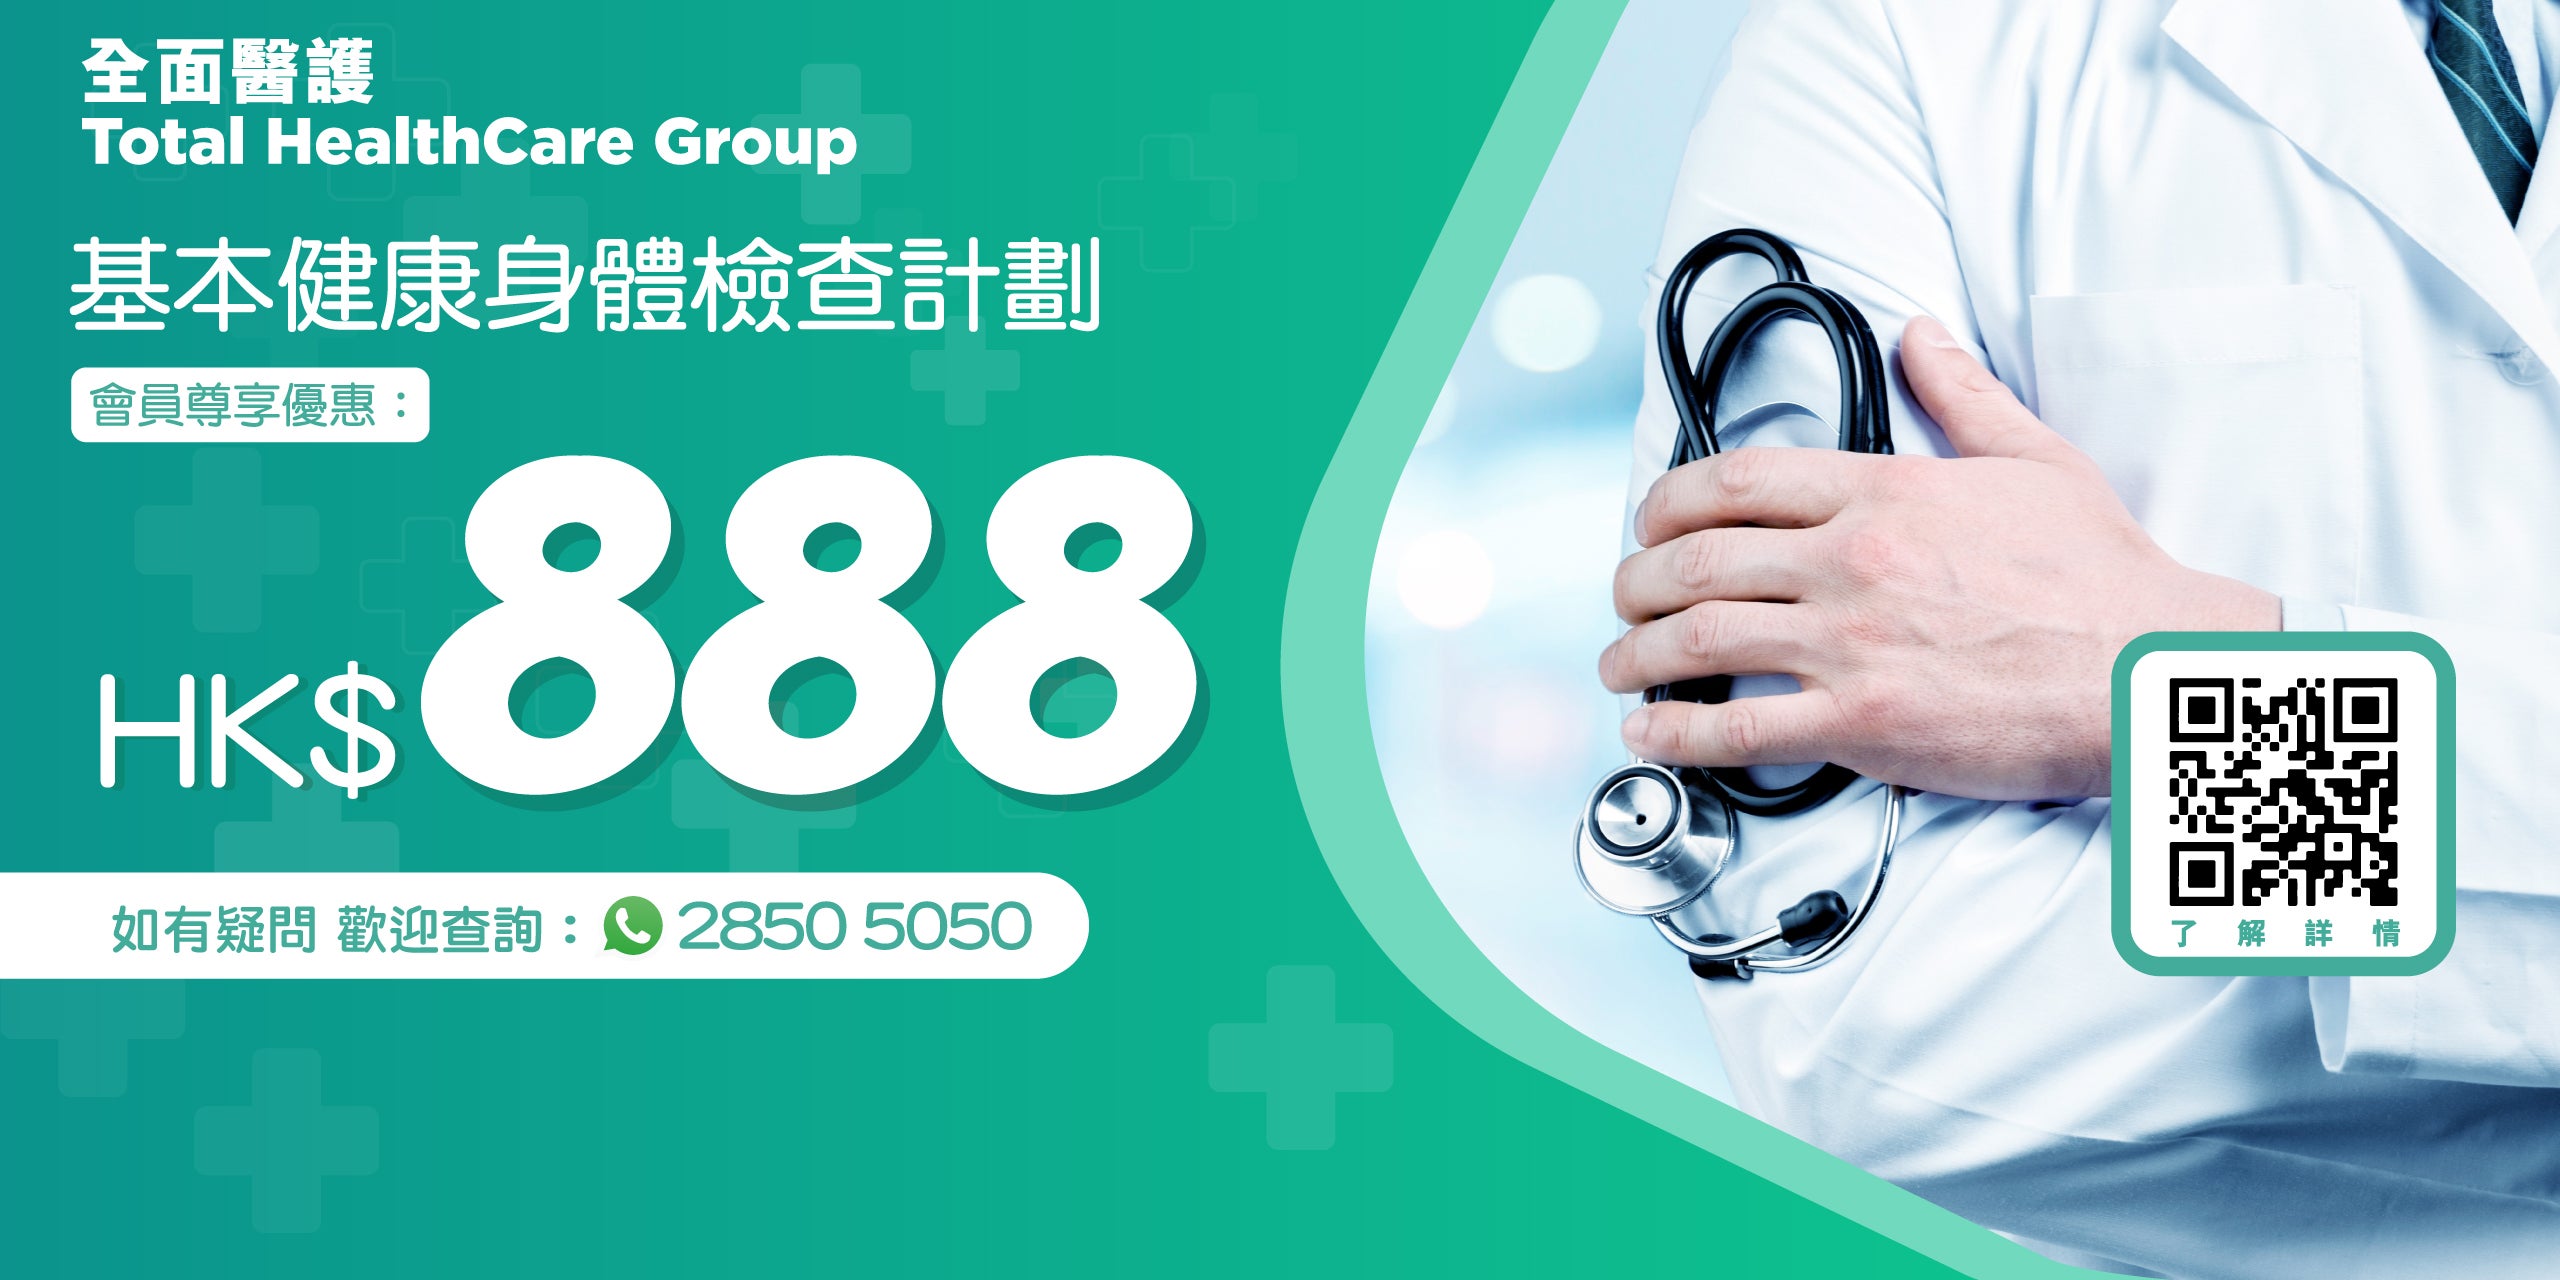 會員尊享HK$888體檢計劃